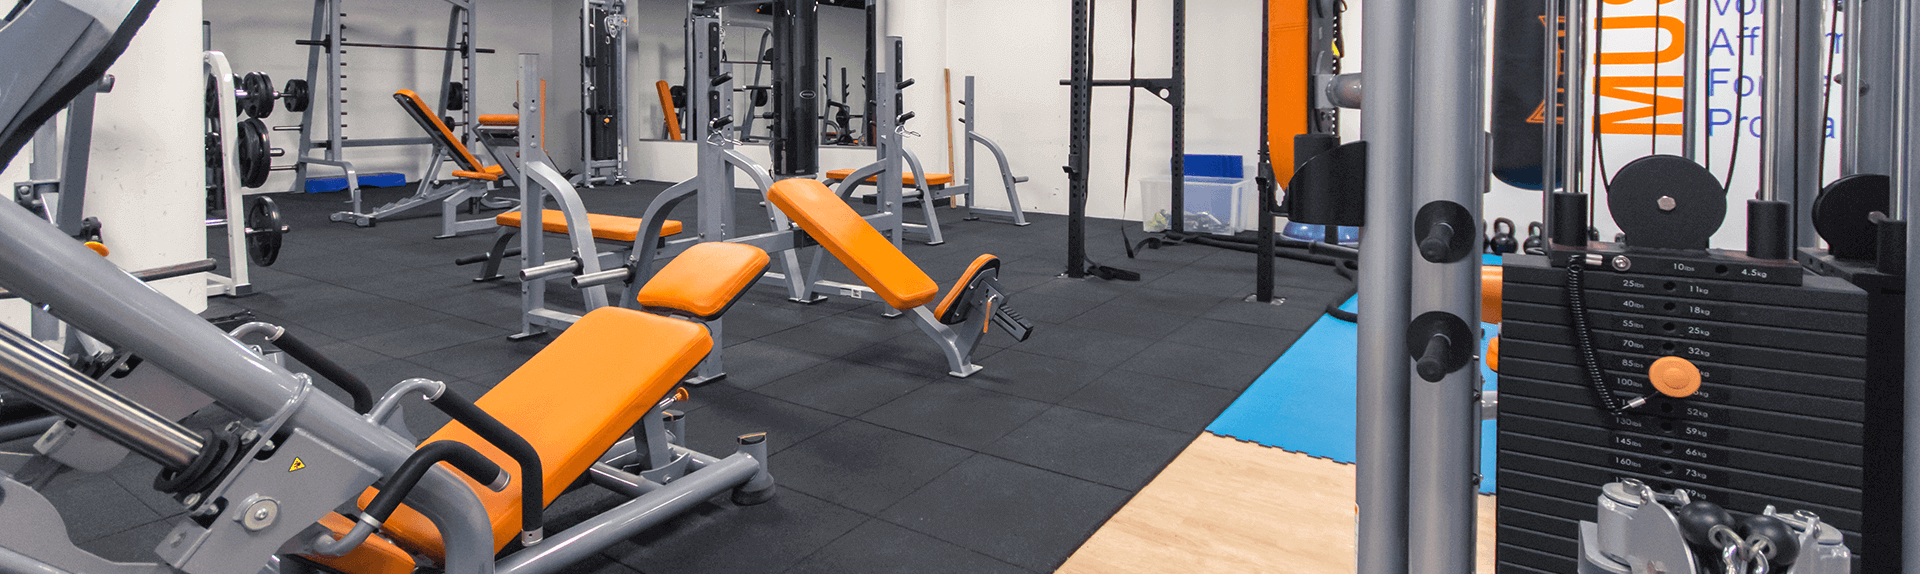 Salle De Sport Et Fitness À Grésy-Sur-Aix - L'orange Bleue dedans Salle De Sport Aix Les Bains